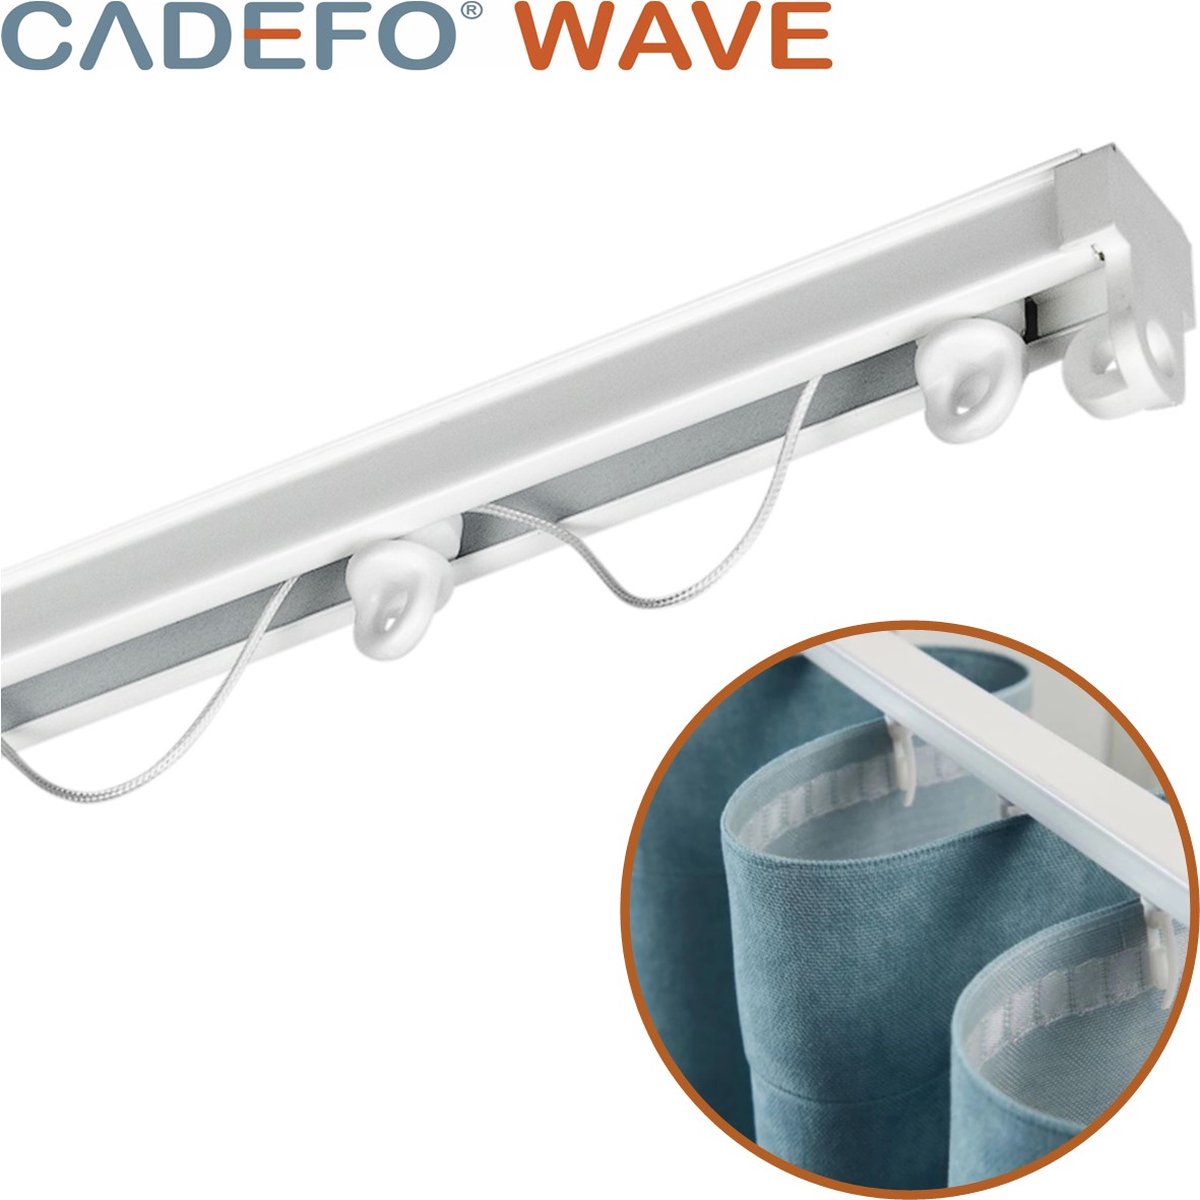 CADEFO WAVE (501 - 550 cm) Gordijnrails - Compleet op maat! - UIT 1 STUK - Leverbaar tot 6 meter - Plafondbevestiging - Lengte 524 cm